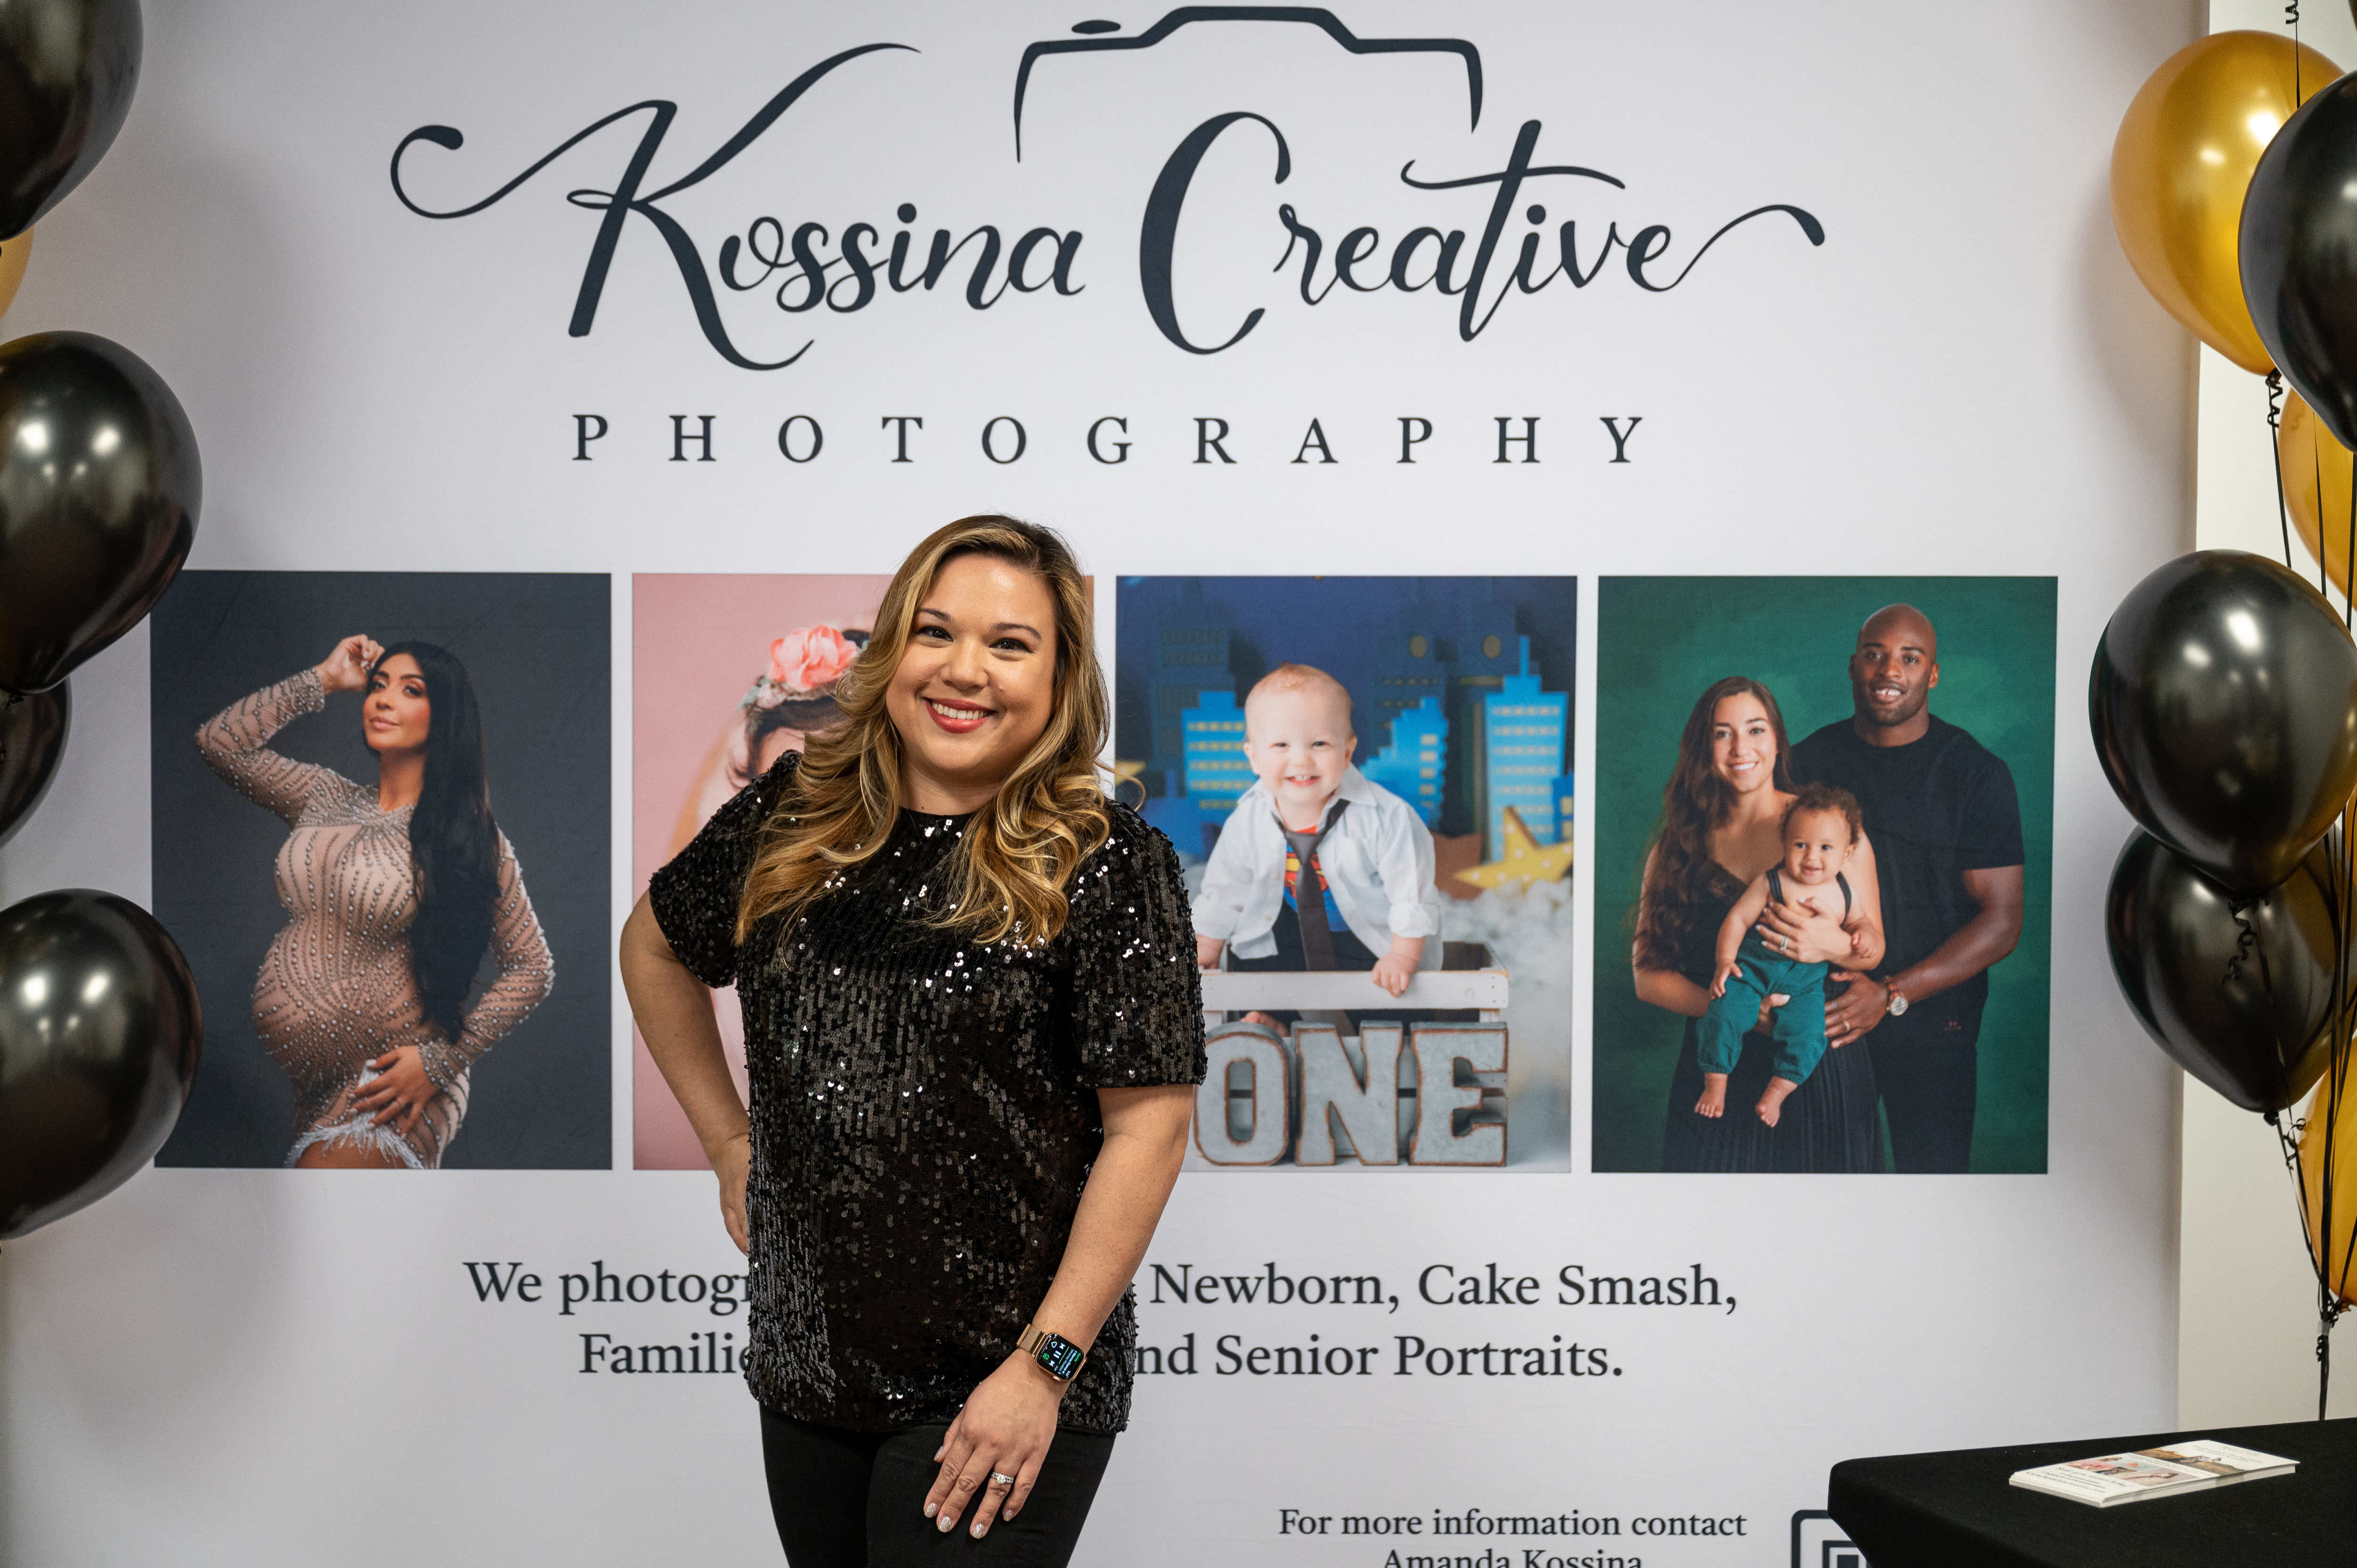 Amanda Kossina, Photographer and owner of Kossina Creative Photography